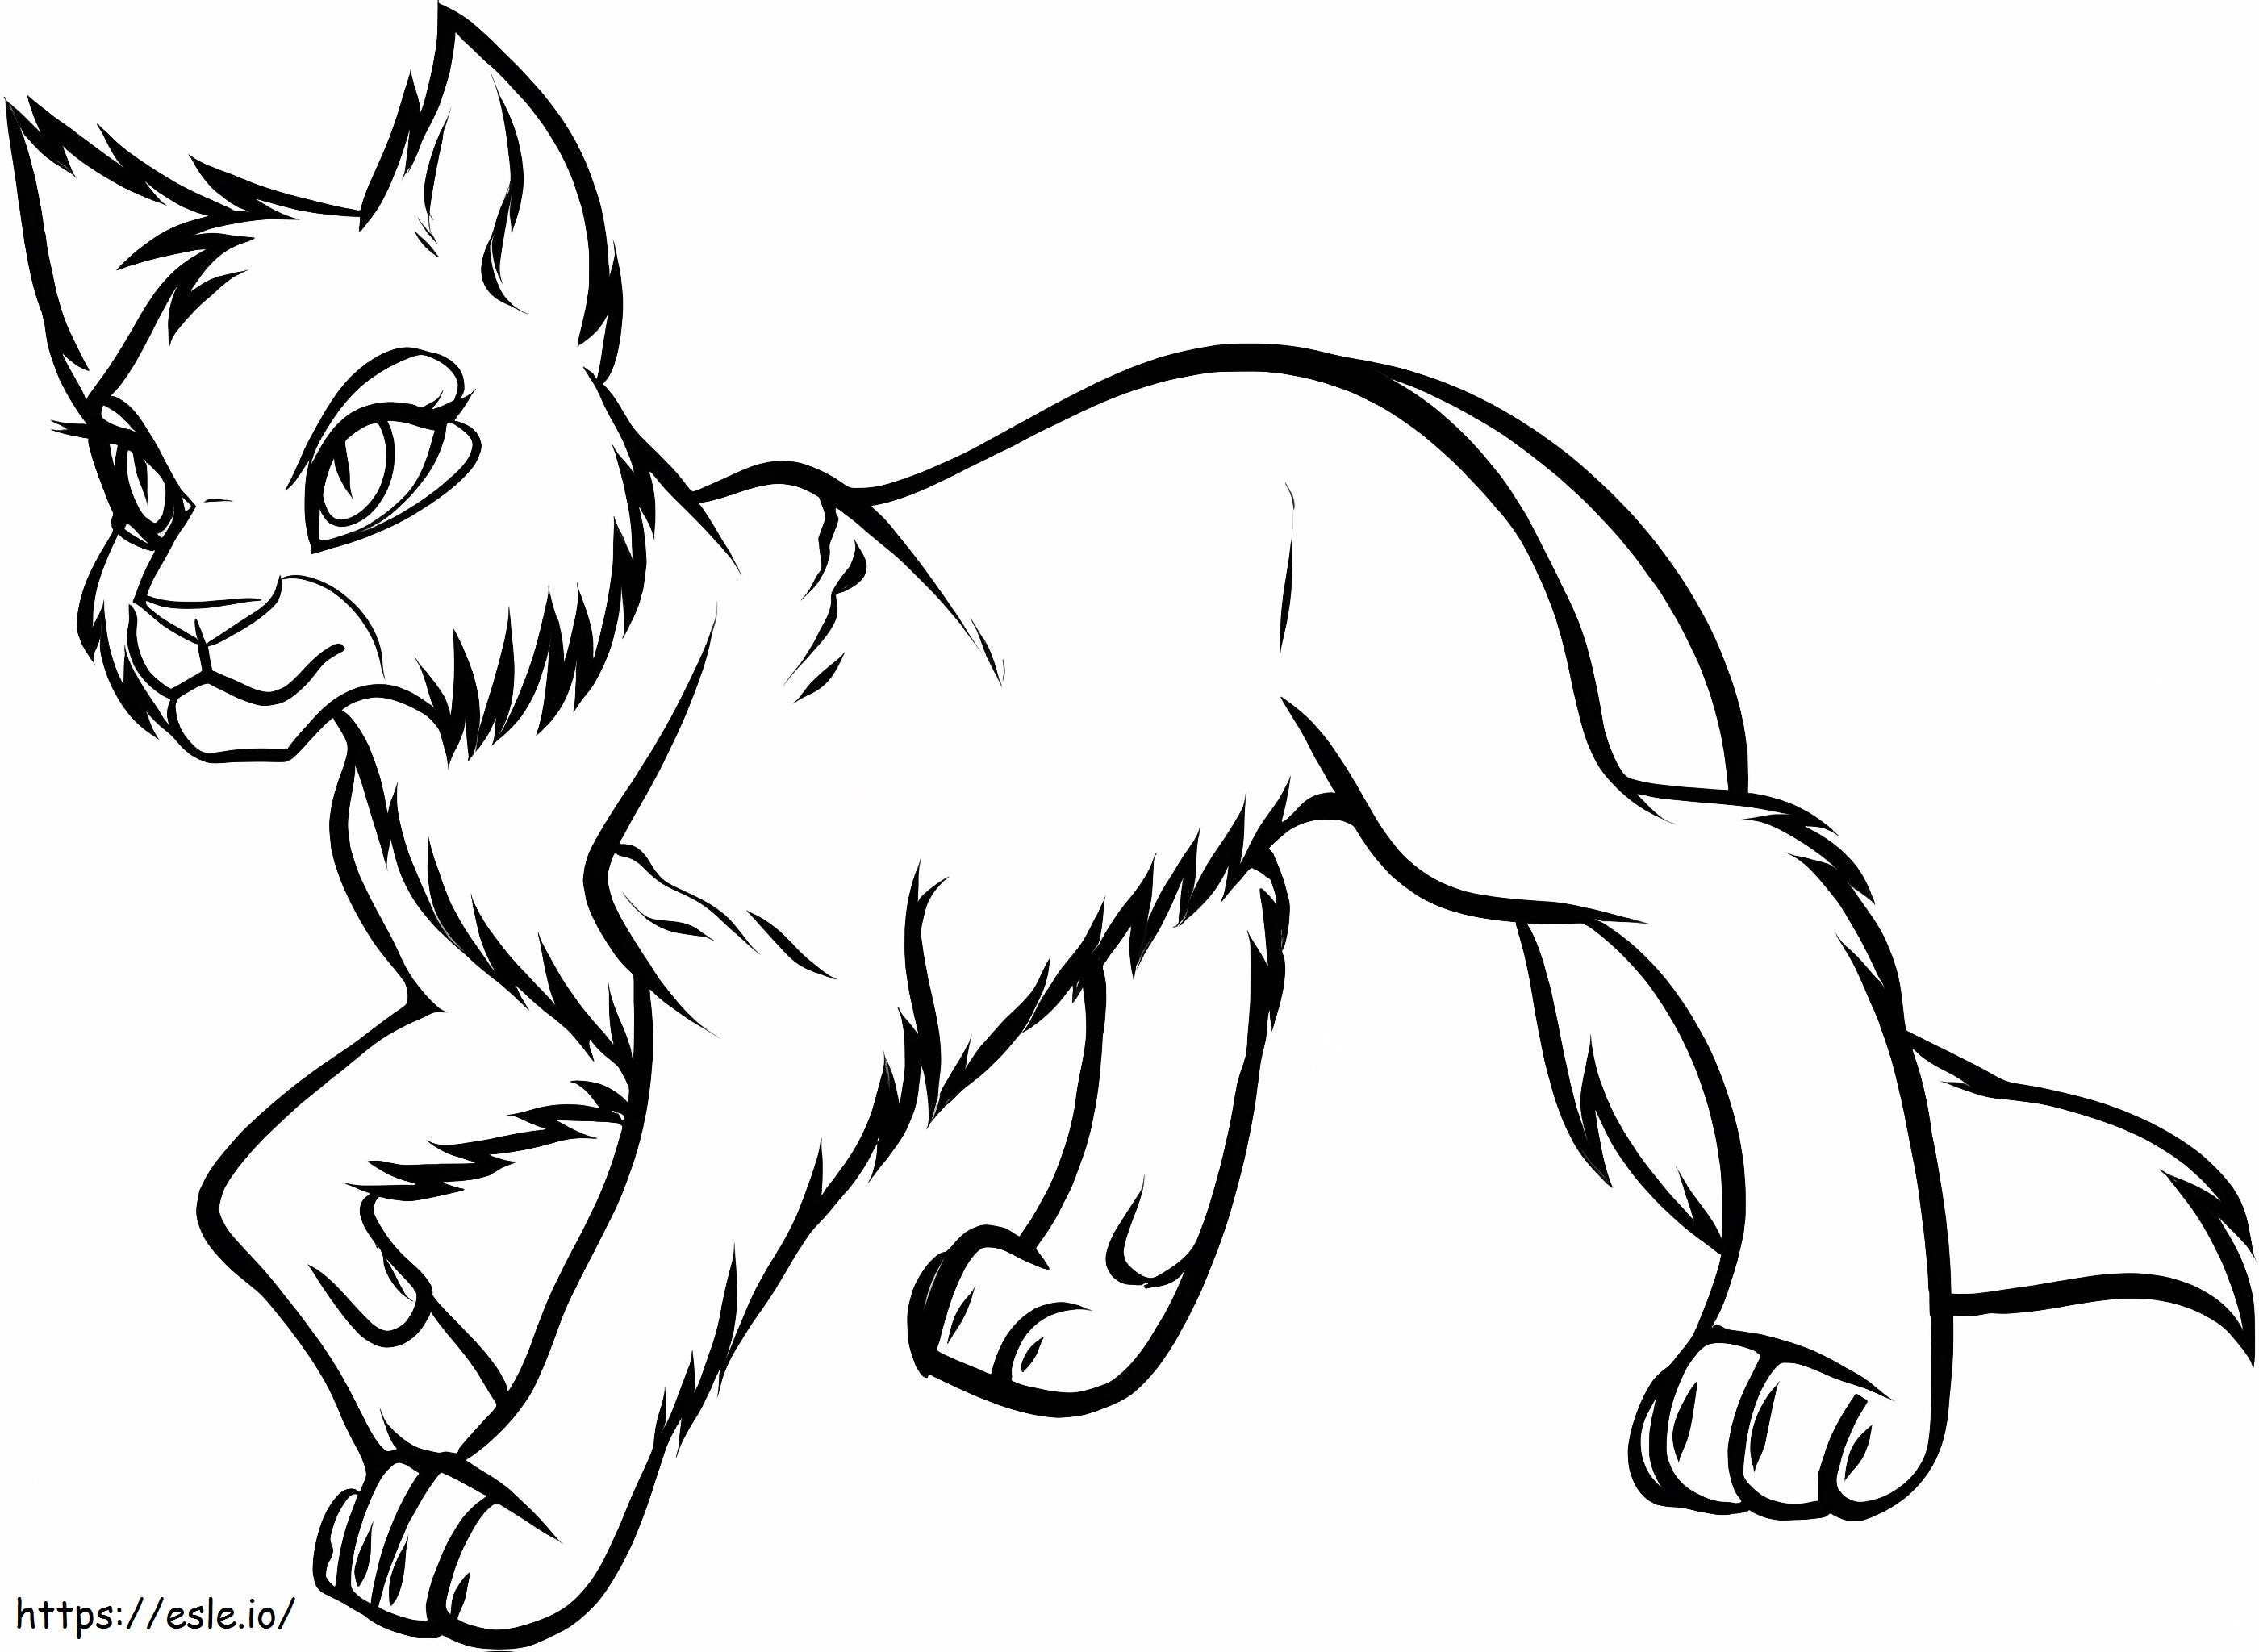 Podstawowy rysunek kota wojownika kolorowanka